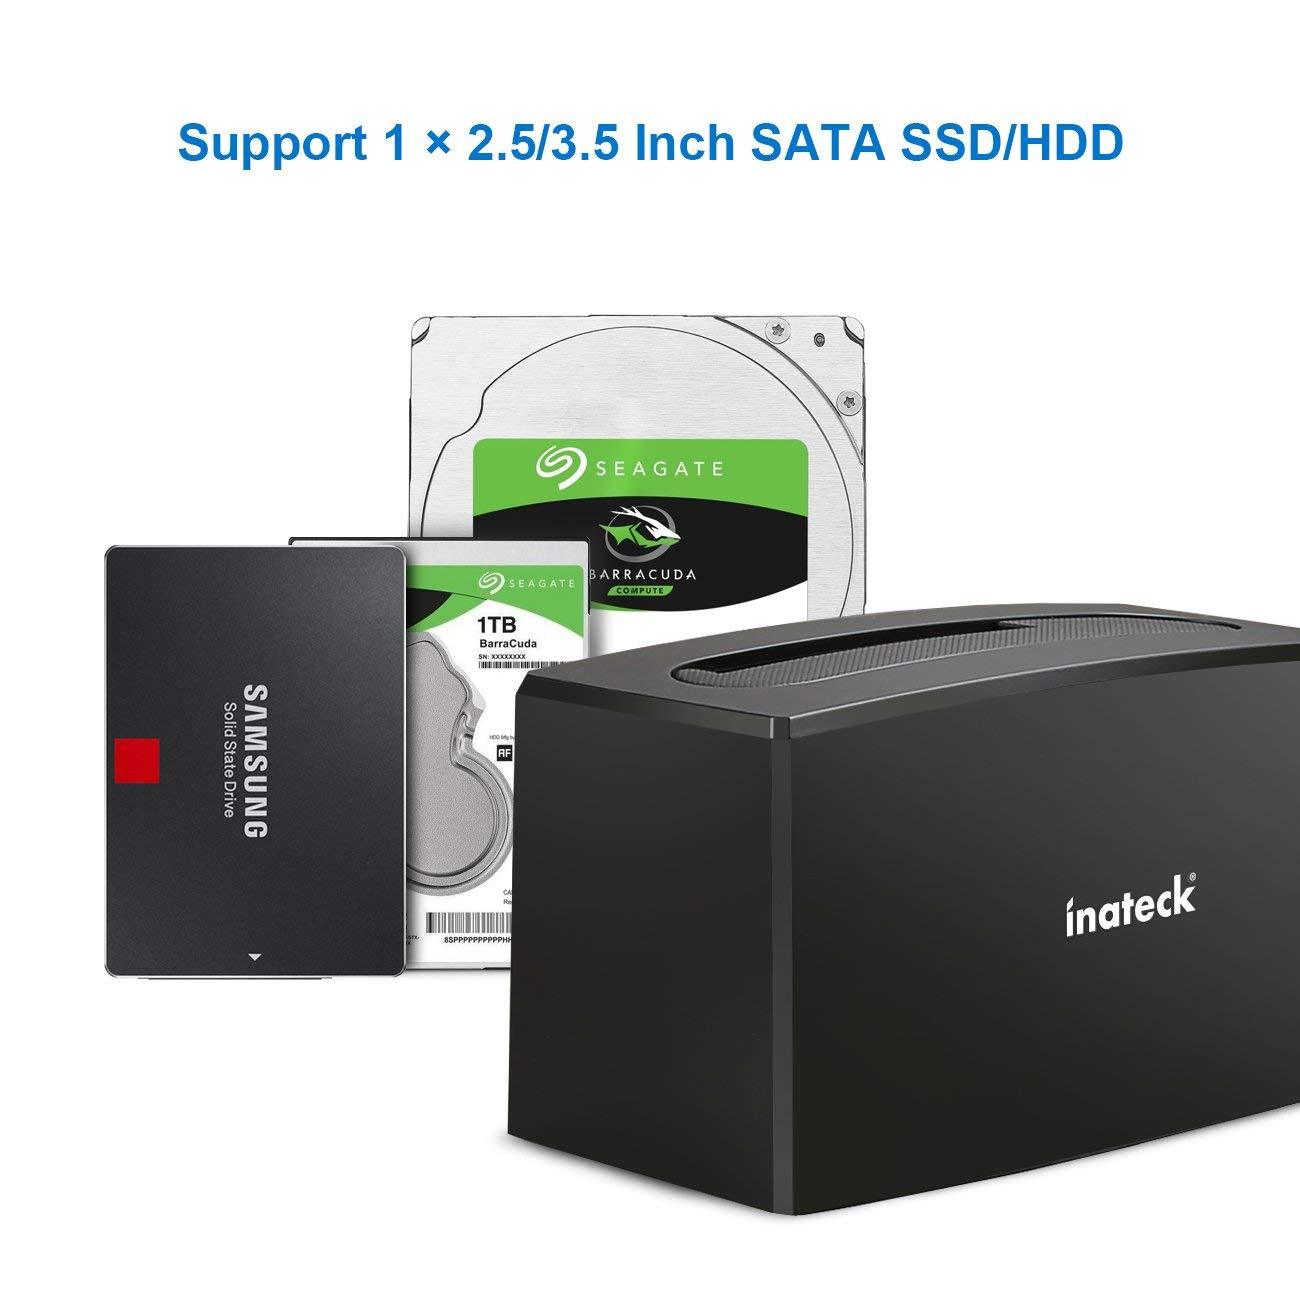 Inateck USB 3.0 – SATA 1ベイハードドライブドッキングステーション、2.5インチおよび3.5インチSATA I/II / III HDD SSD用、 SA02001 - Inateckバックパックジャパン